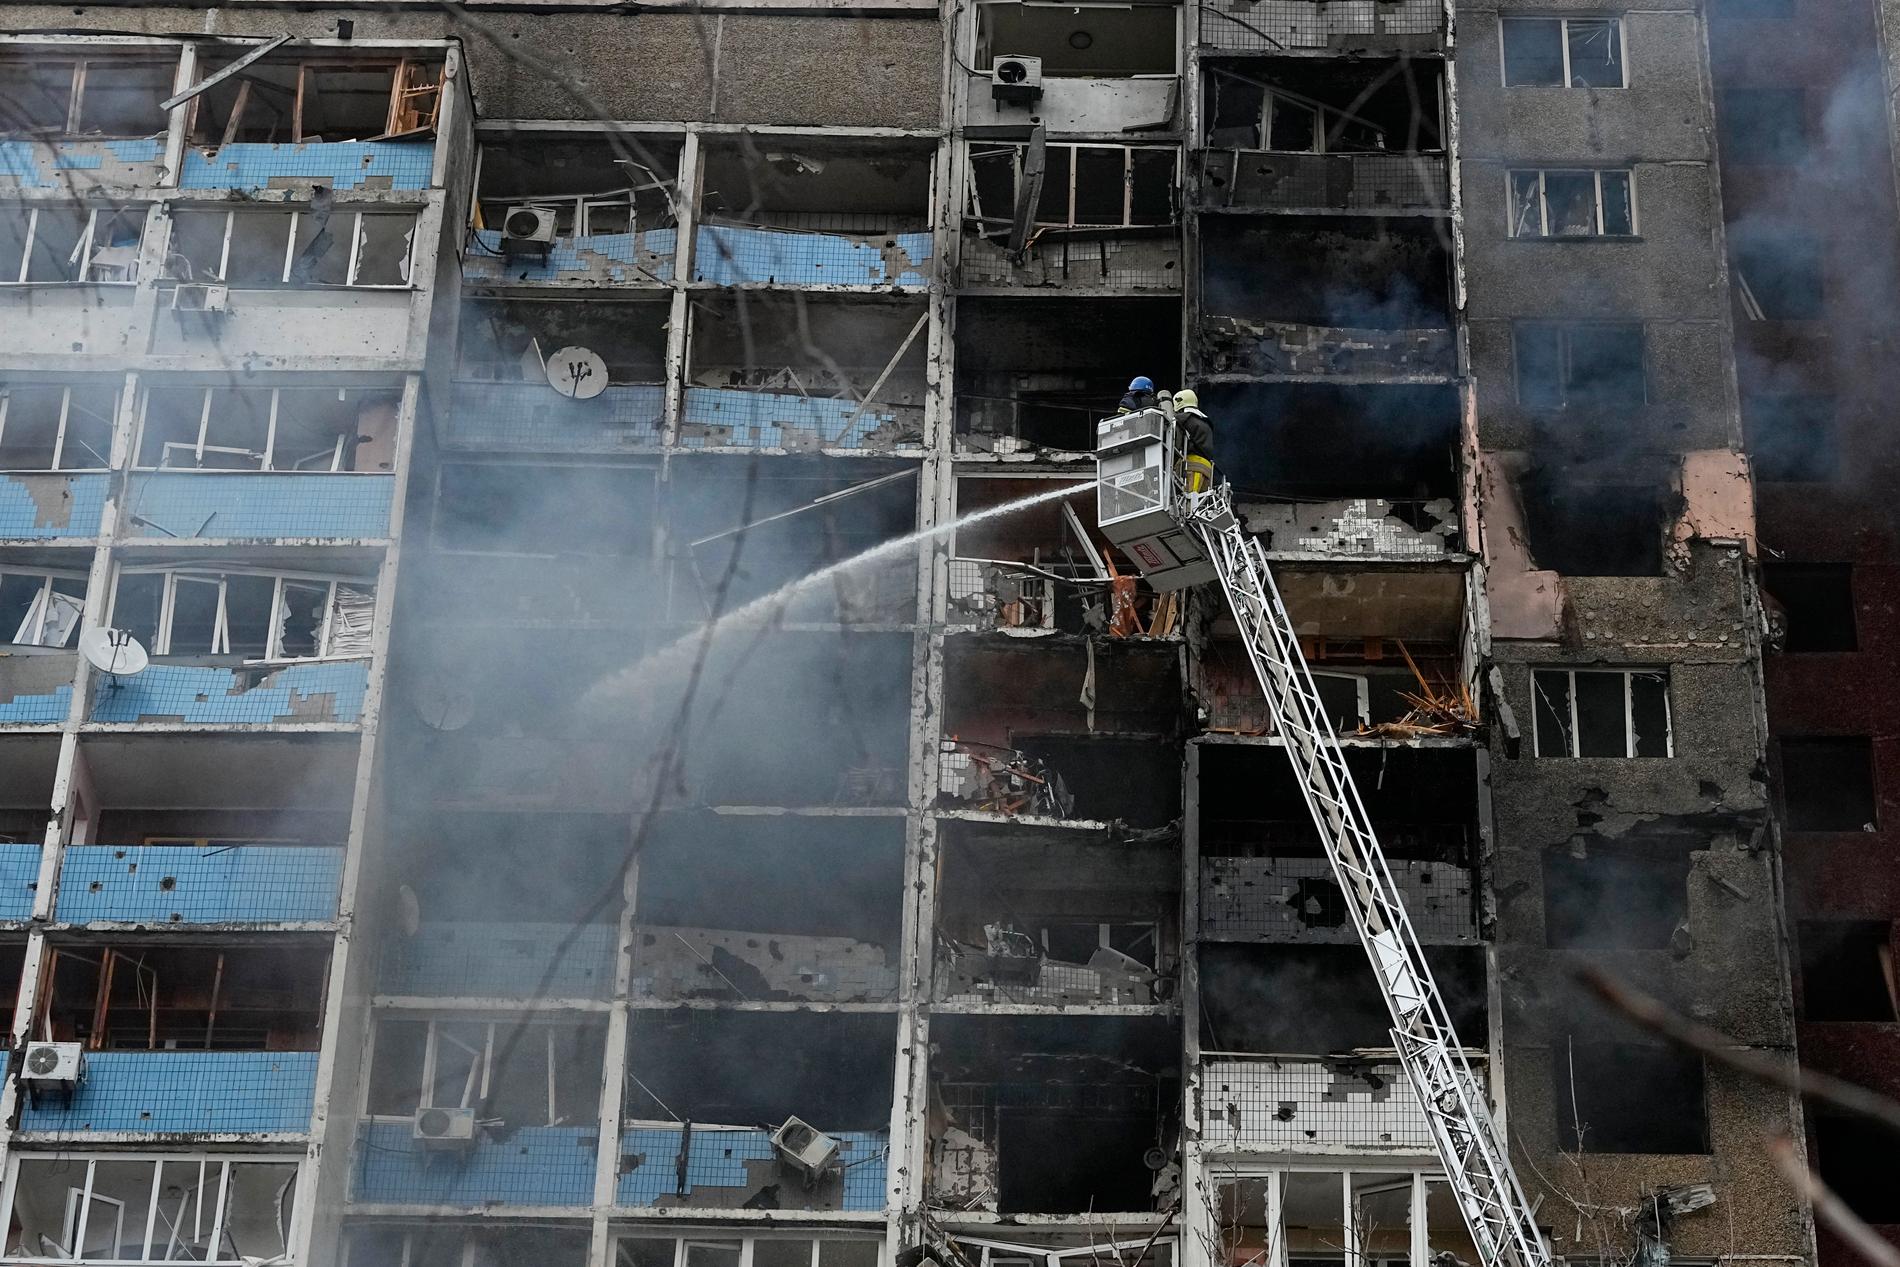 Brandmän arbetar med att släcka bränder efter att en raket träffat ett bostadshus i Kiev under natten mot onsdagen.